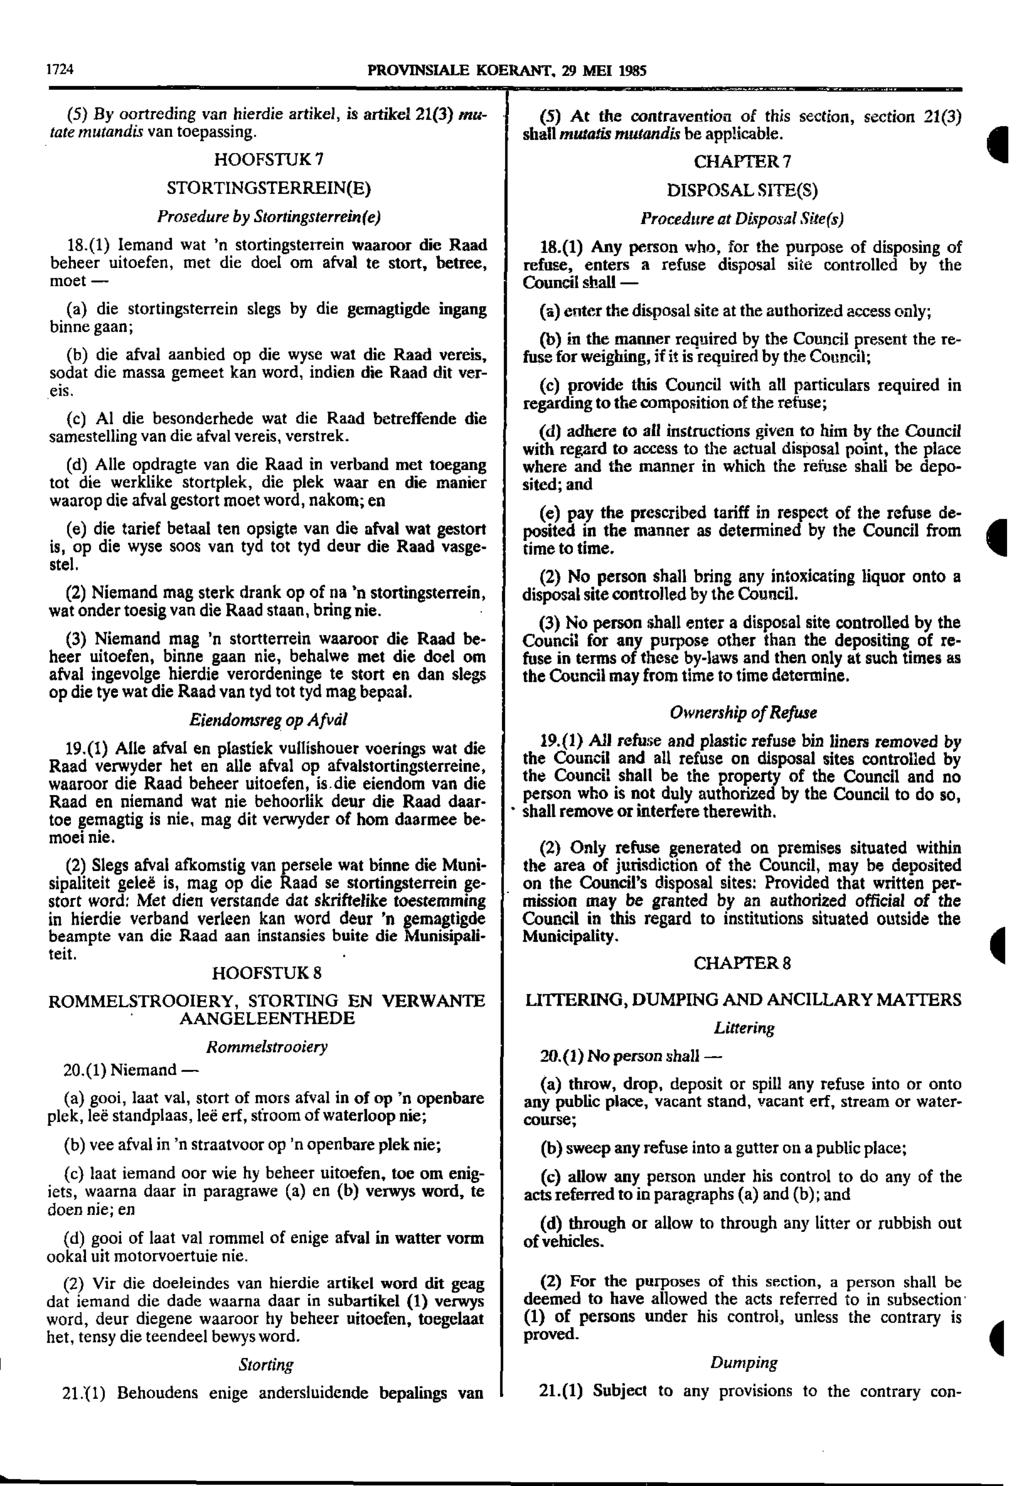 1724 PROVNSALE KOERANT, 29 ME 1985 (5) By oortreding van hierdie artikel, is artikel 21(3) mu (5) At the contravention of this section, section 21(3) tate mutandis van toepassing shall mutaiis